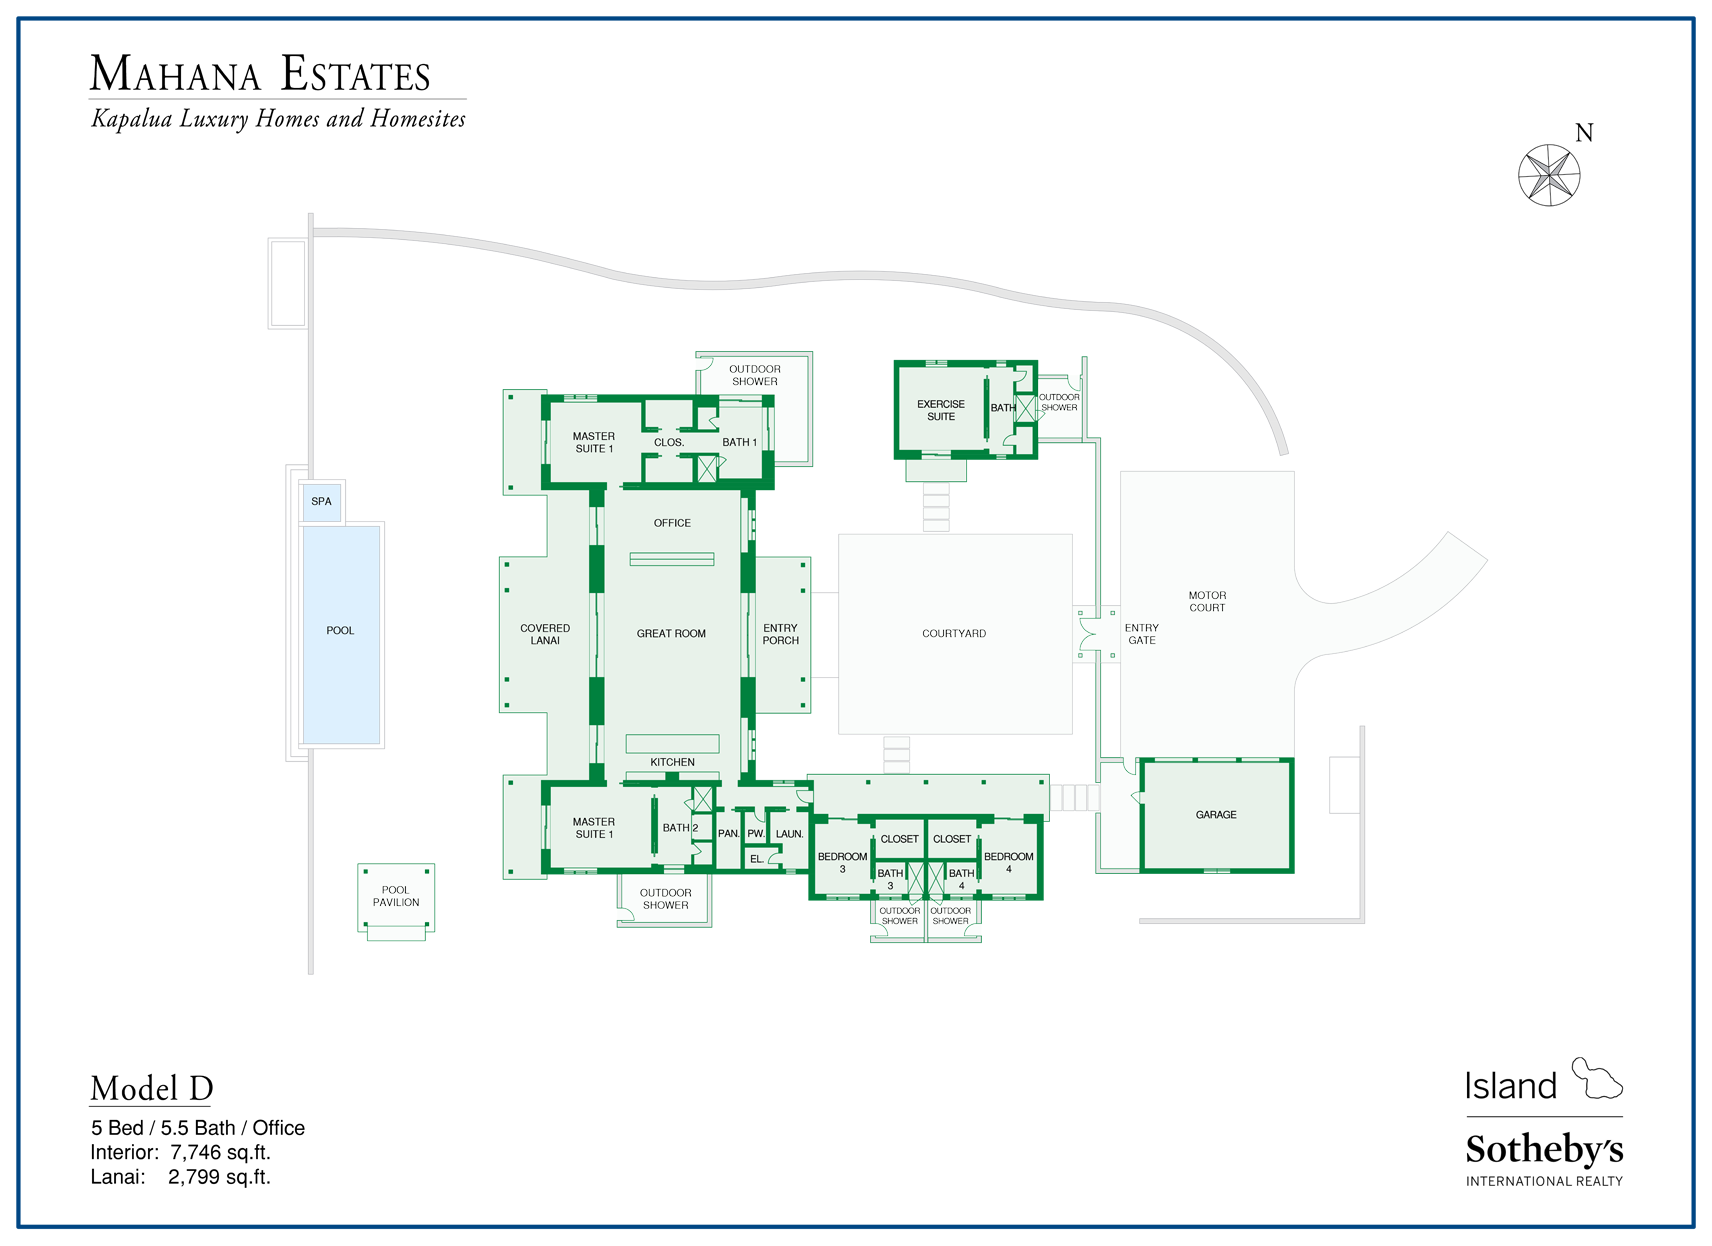 mahana estates floor plan model D